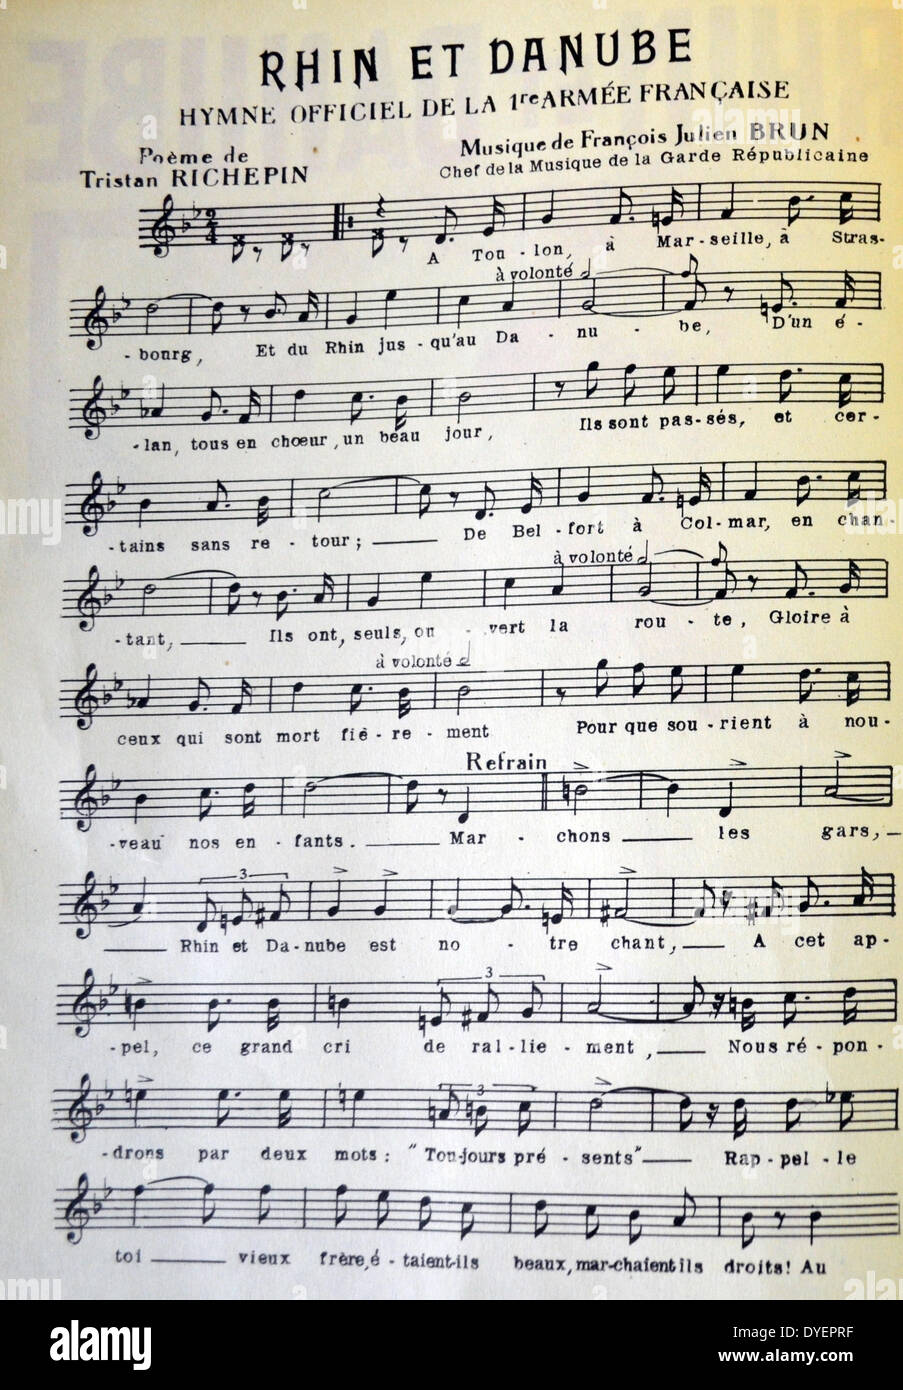 Patriotisches Lied Musik-Score als offizielle Hymne der freien französischen Armee in Elsass-Lothringen zu handeln. Zweiter Weltkrieg. 1943 Stockfoto